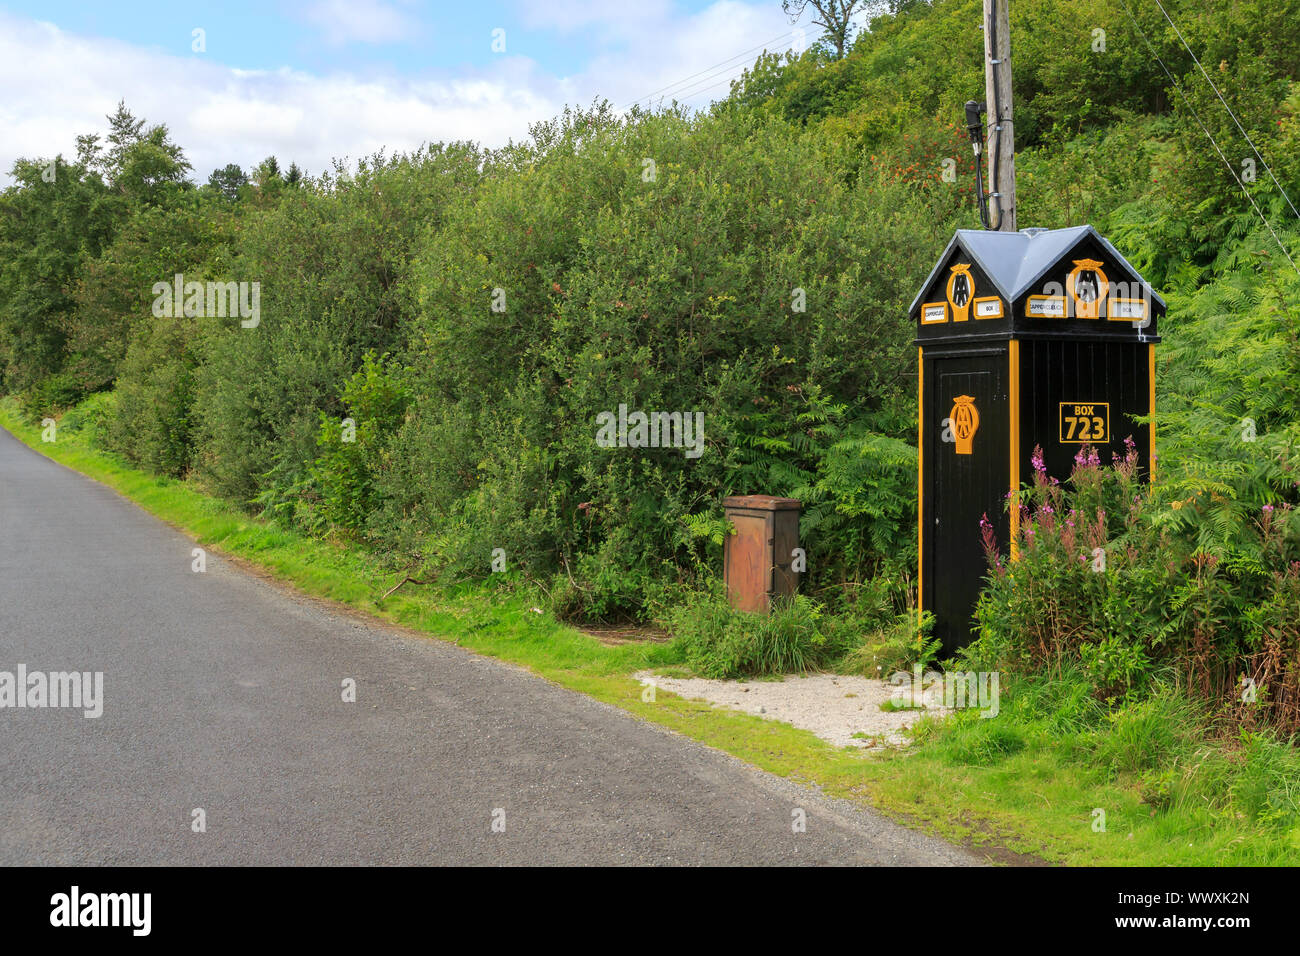 CAPPERCLEUCH, Schottland - 15. AUGUST 2019: Vintage Automobile Association am Straßenrand Aufschlüsselung callbox an der Seite eines Schottischen Country Road Stockfoto